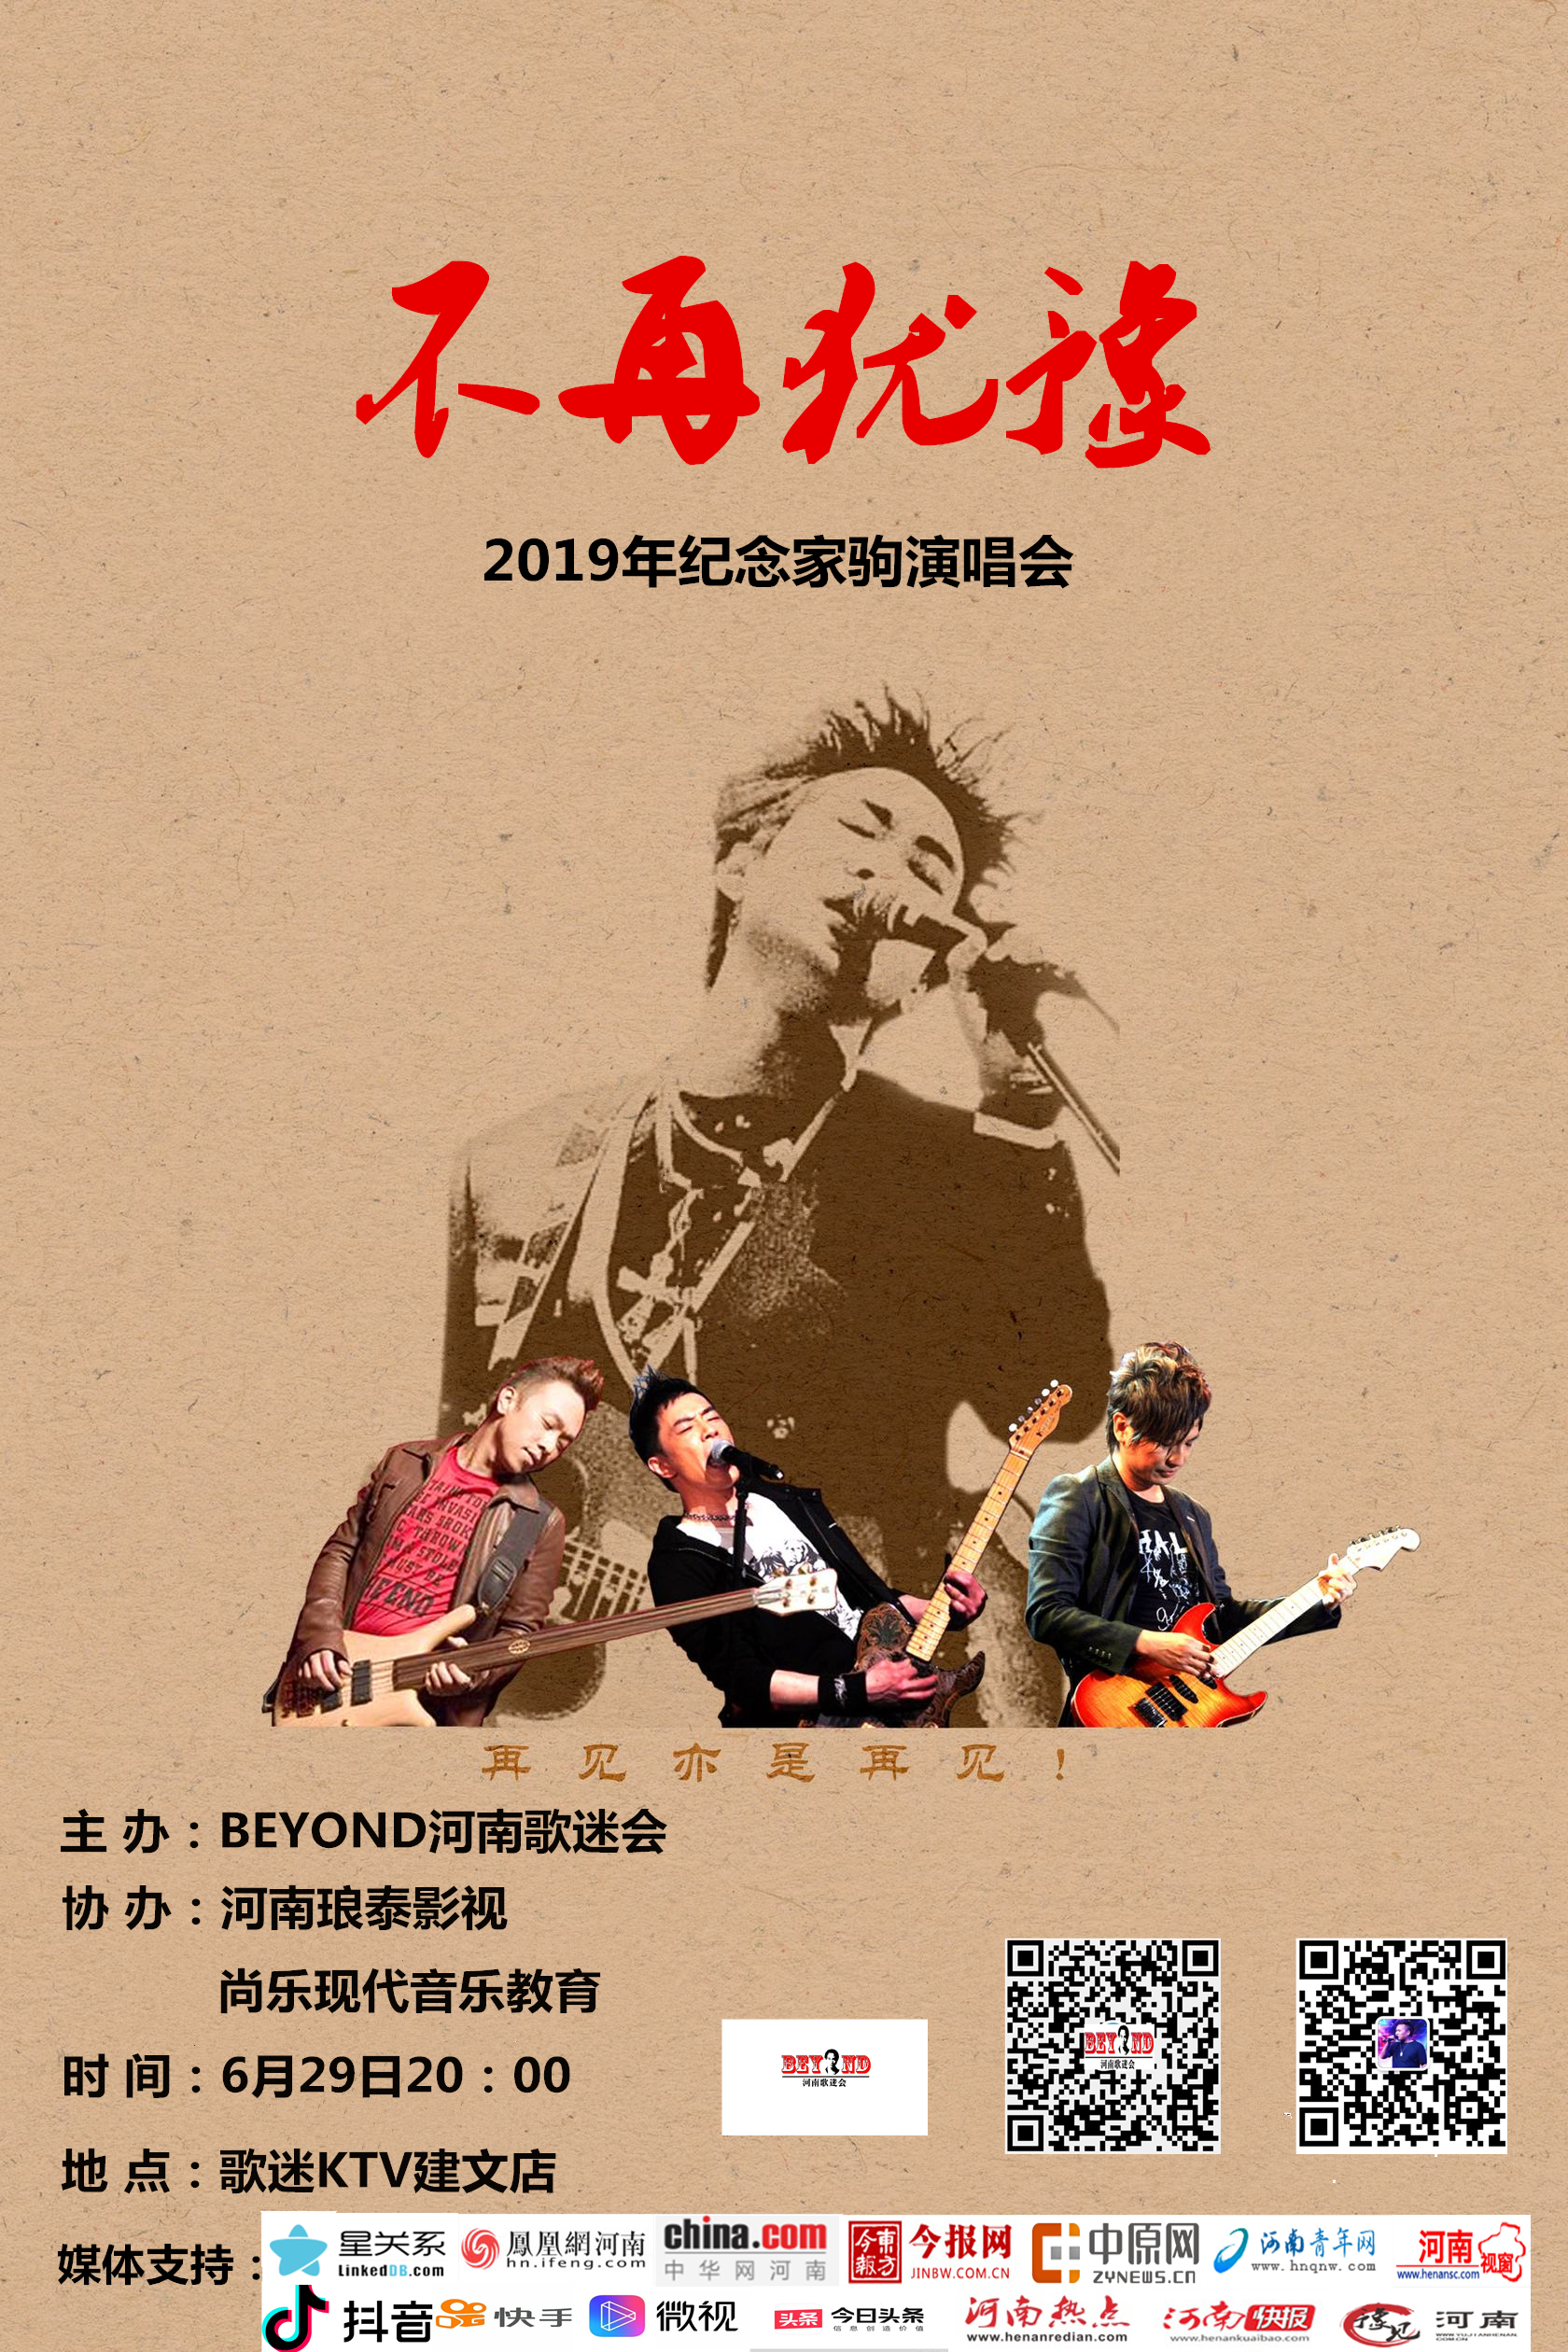 2019年BEYOND纪念家驹演唱会在郑州举办